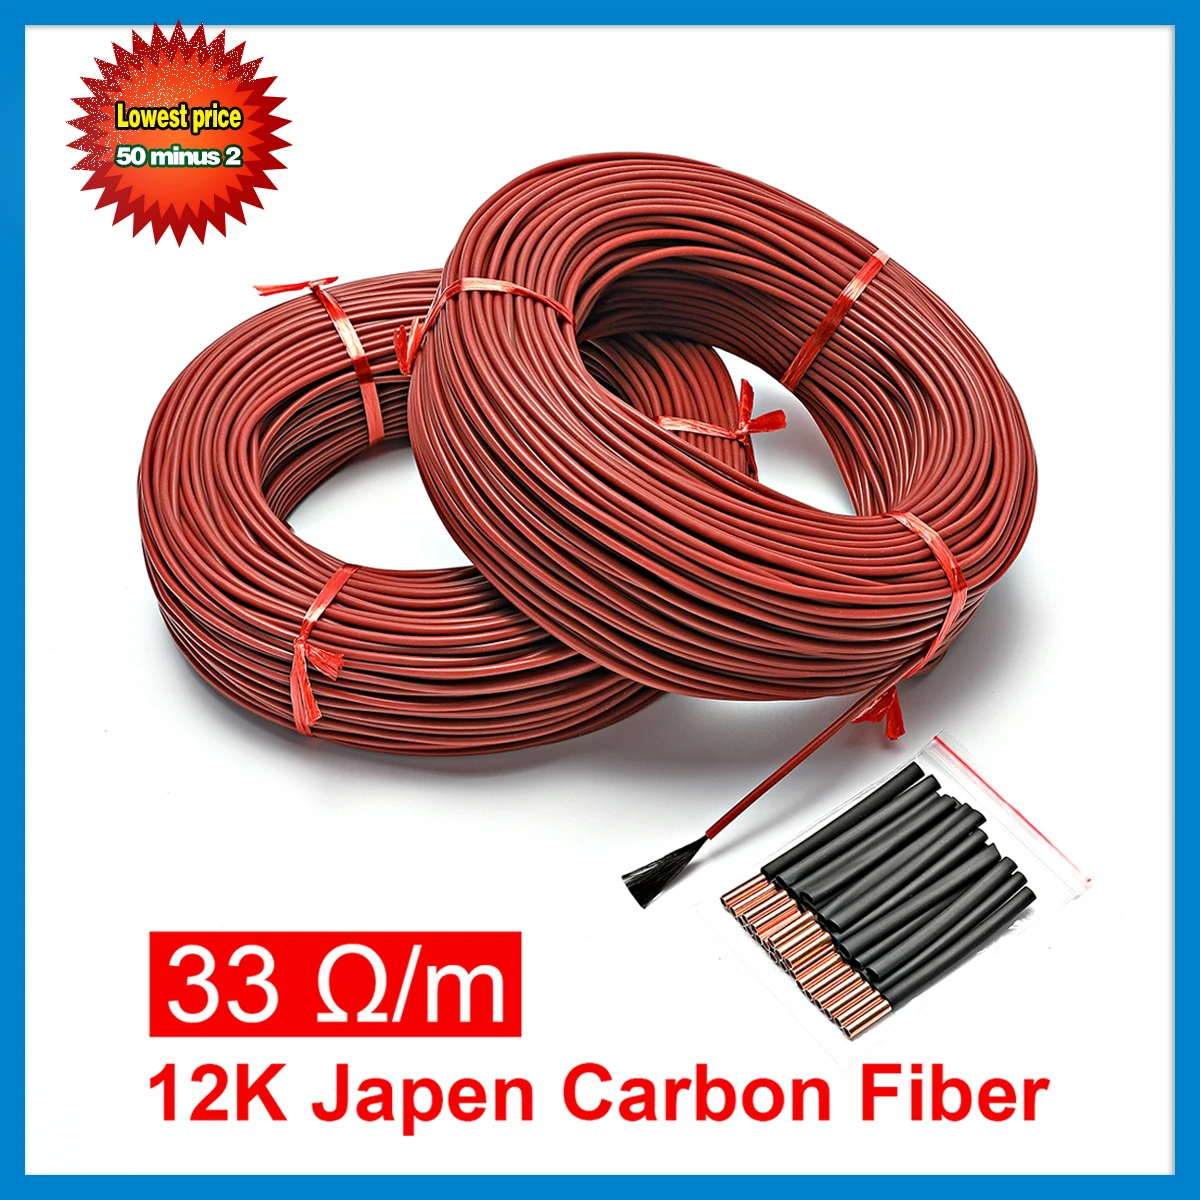 Инфракрасный кабель для обогрева пола 10 м 3 мм силикагелевый провод из